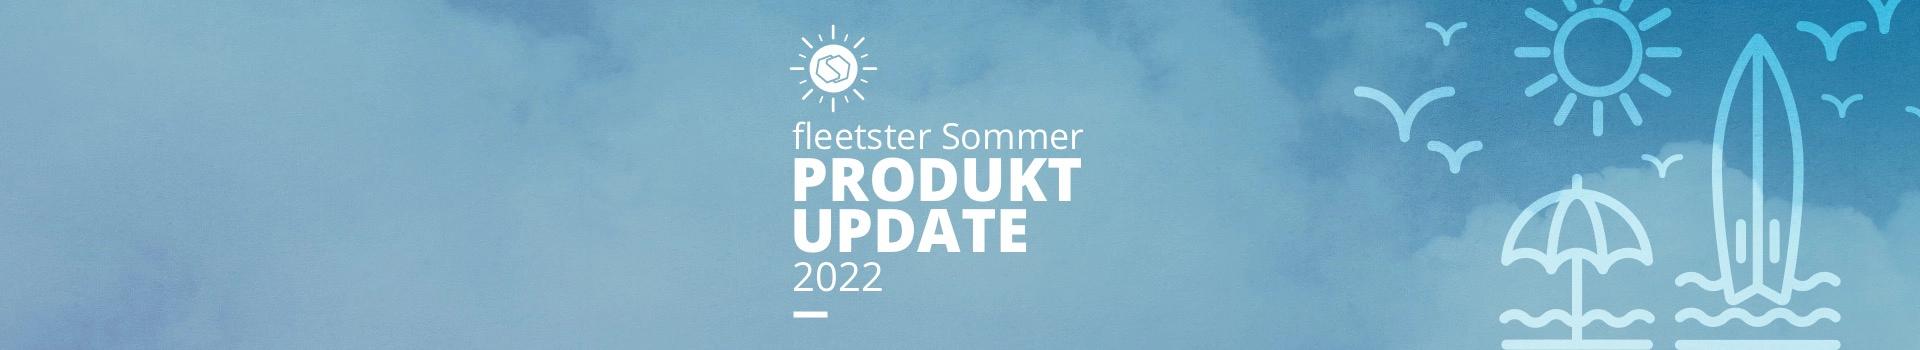 fleetster's Sommer Update 2022